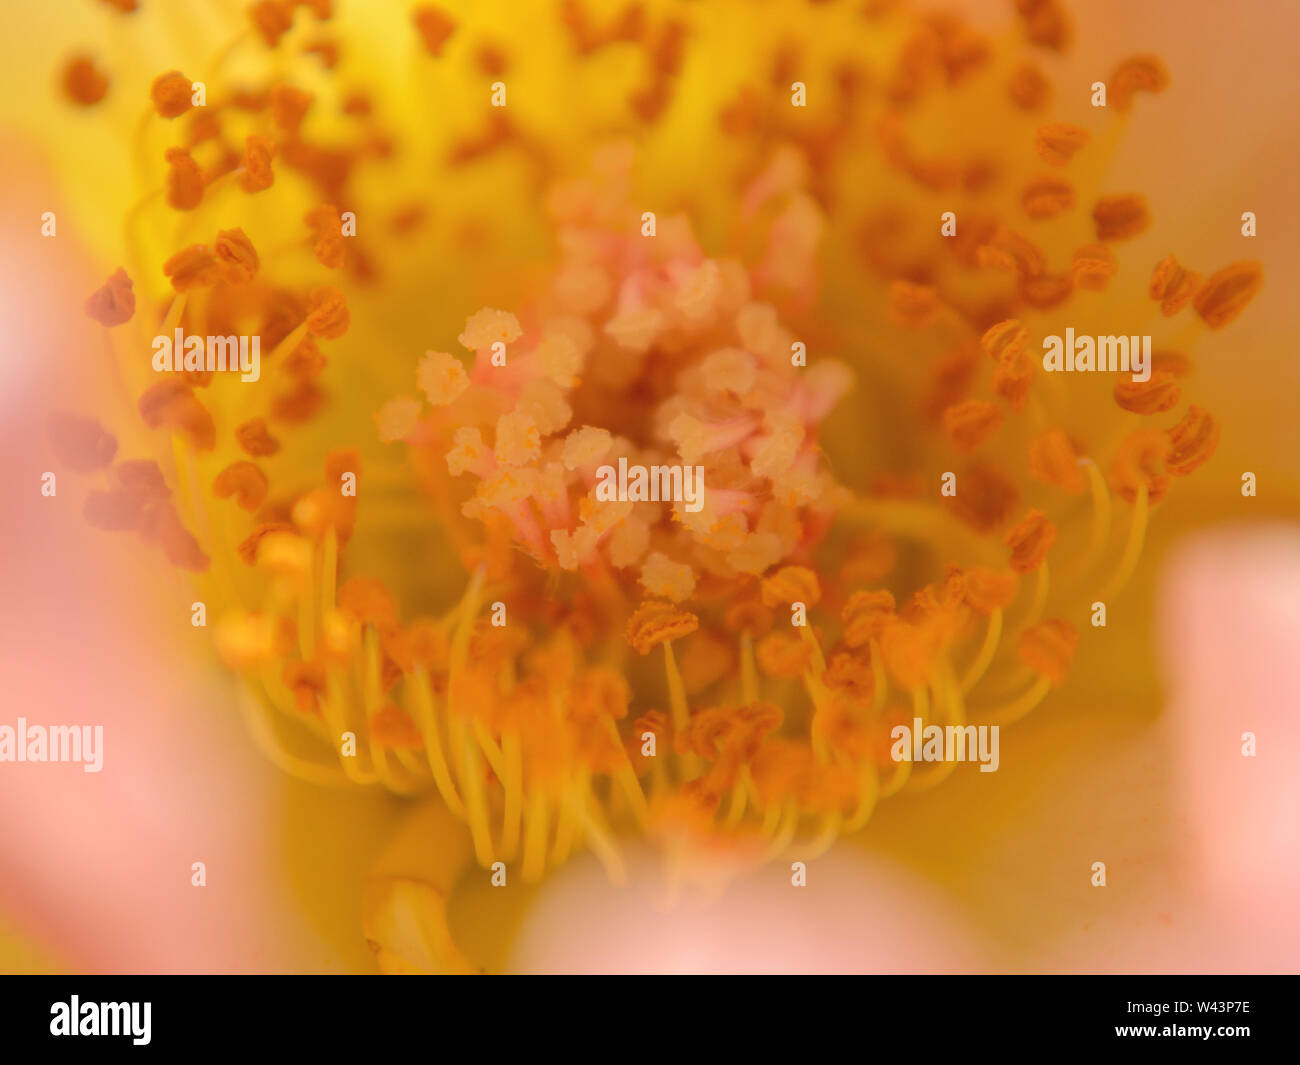 Innenseite einer gelb-rosafarbenen Rose. Pistills and stamens close up, rosa Makrofotografie Stockfoto